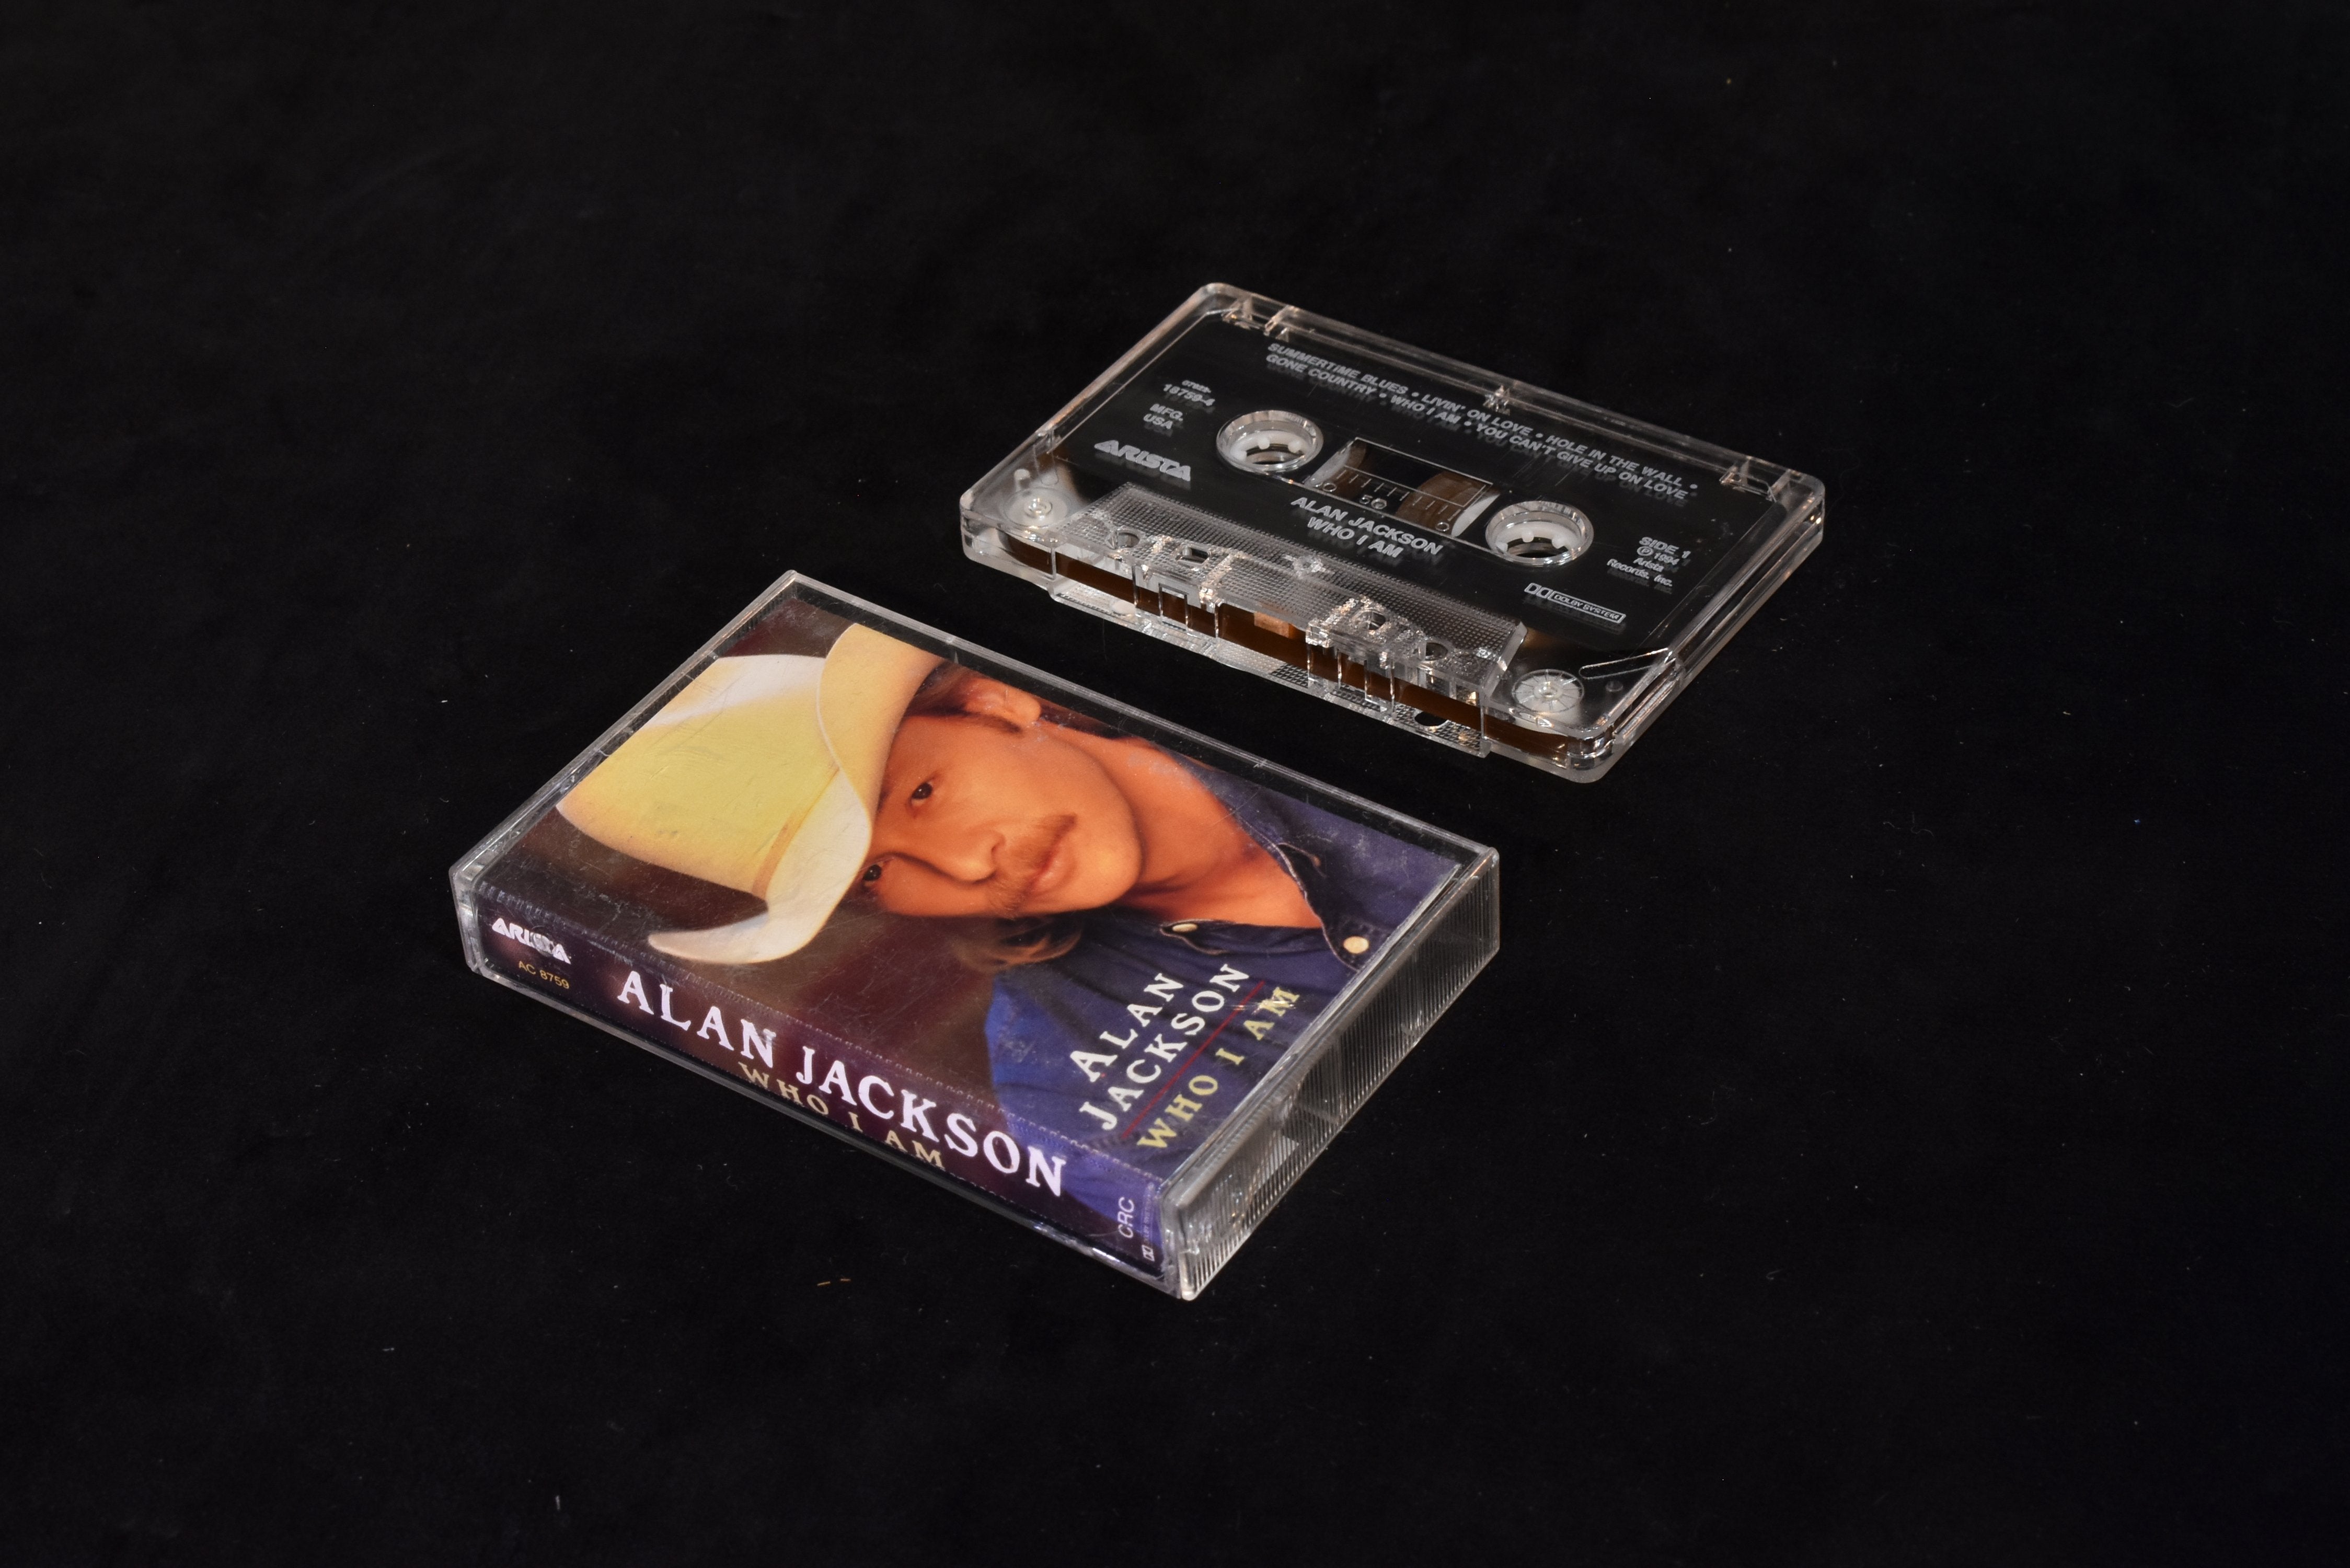 Alan Jackson who I am cassette tape do you used